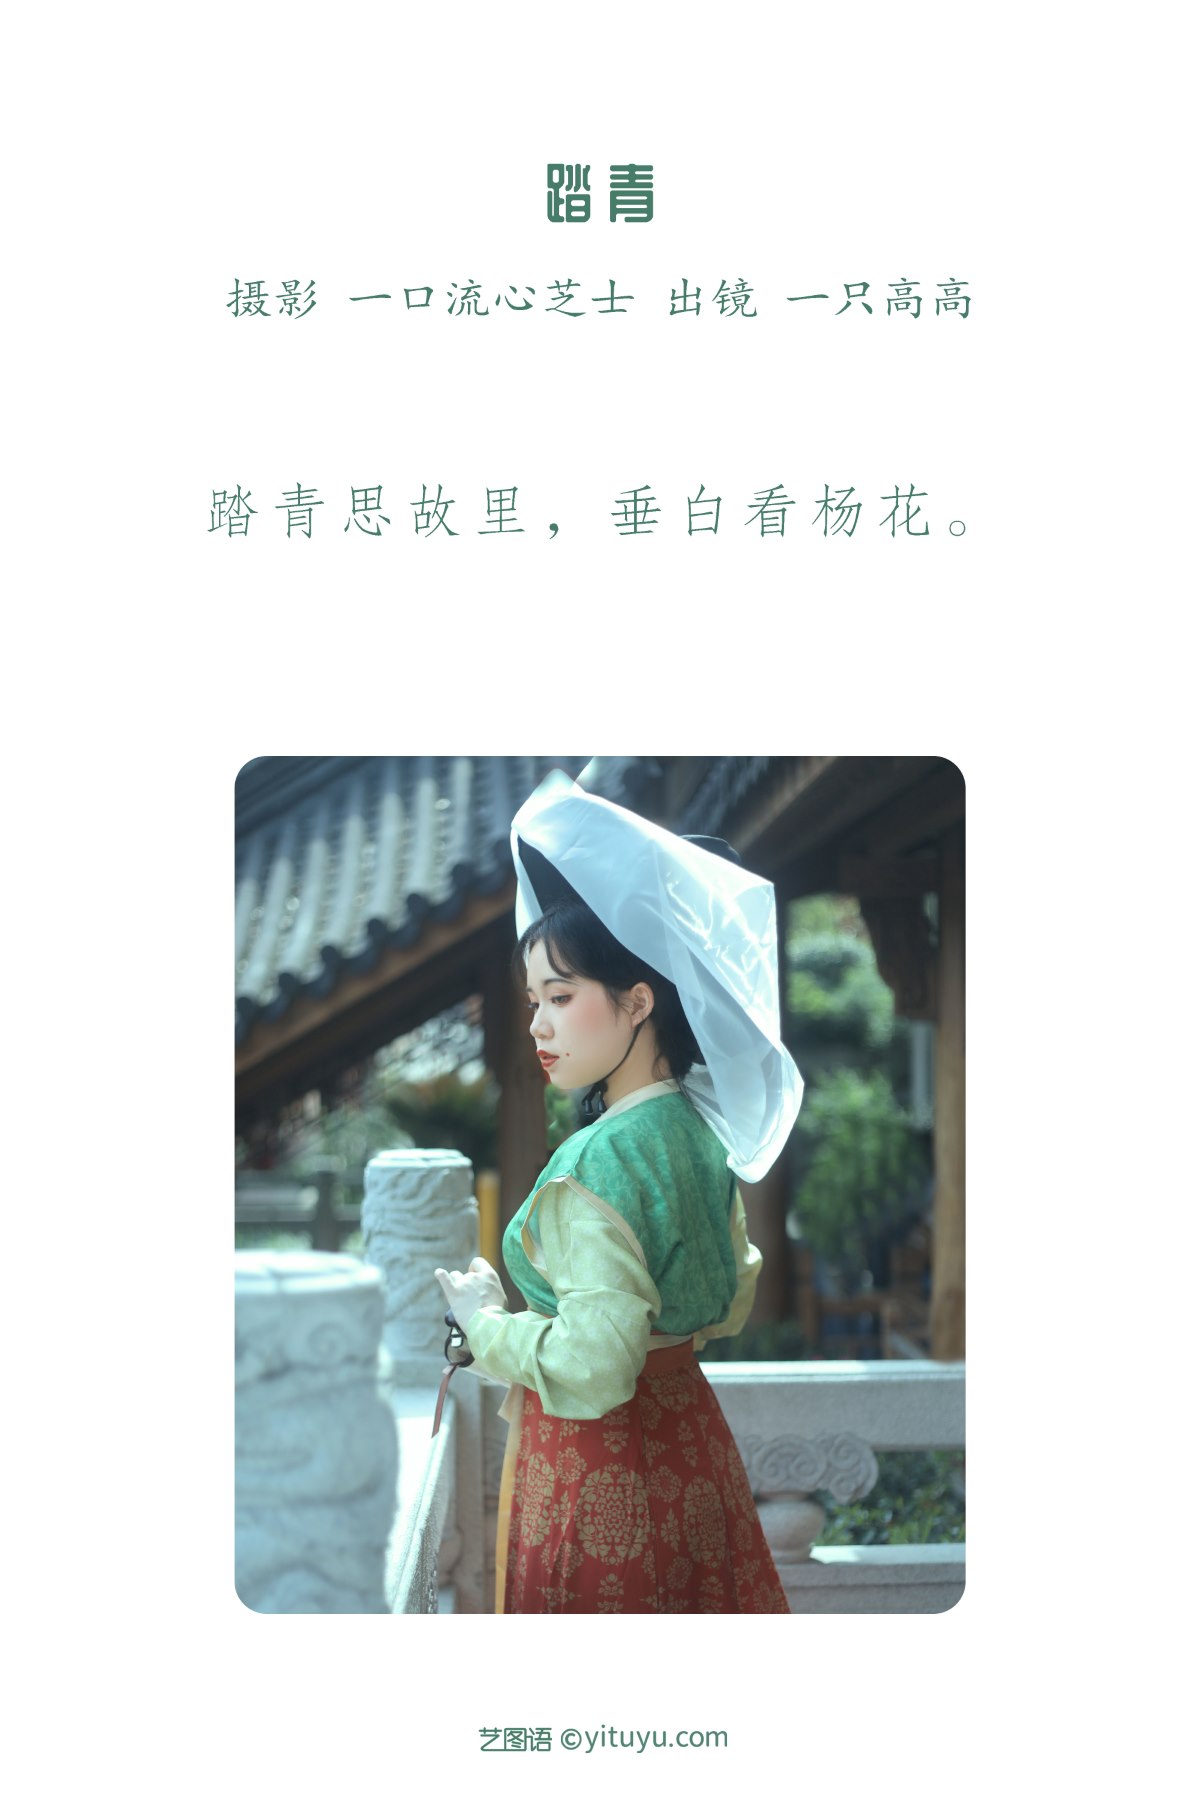 YiTuYu艺图语 Vol 2240 Yi Zhi Gao Gao 0001 1782932390.jpg